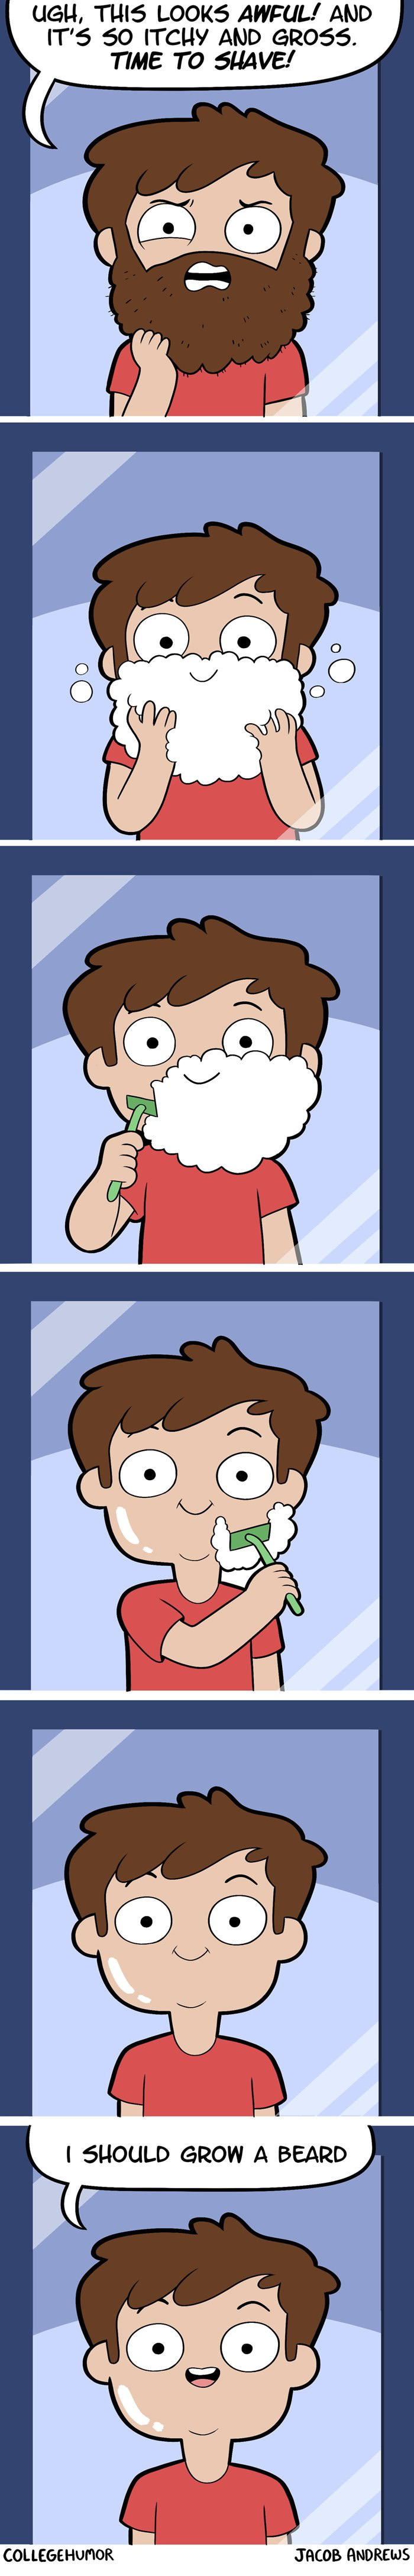 comics-guys-facial-hair